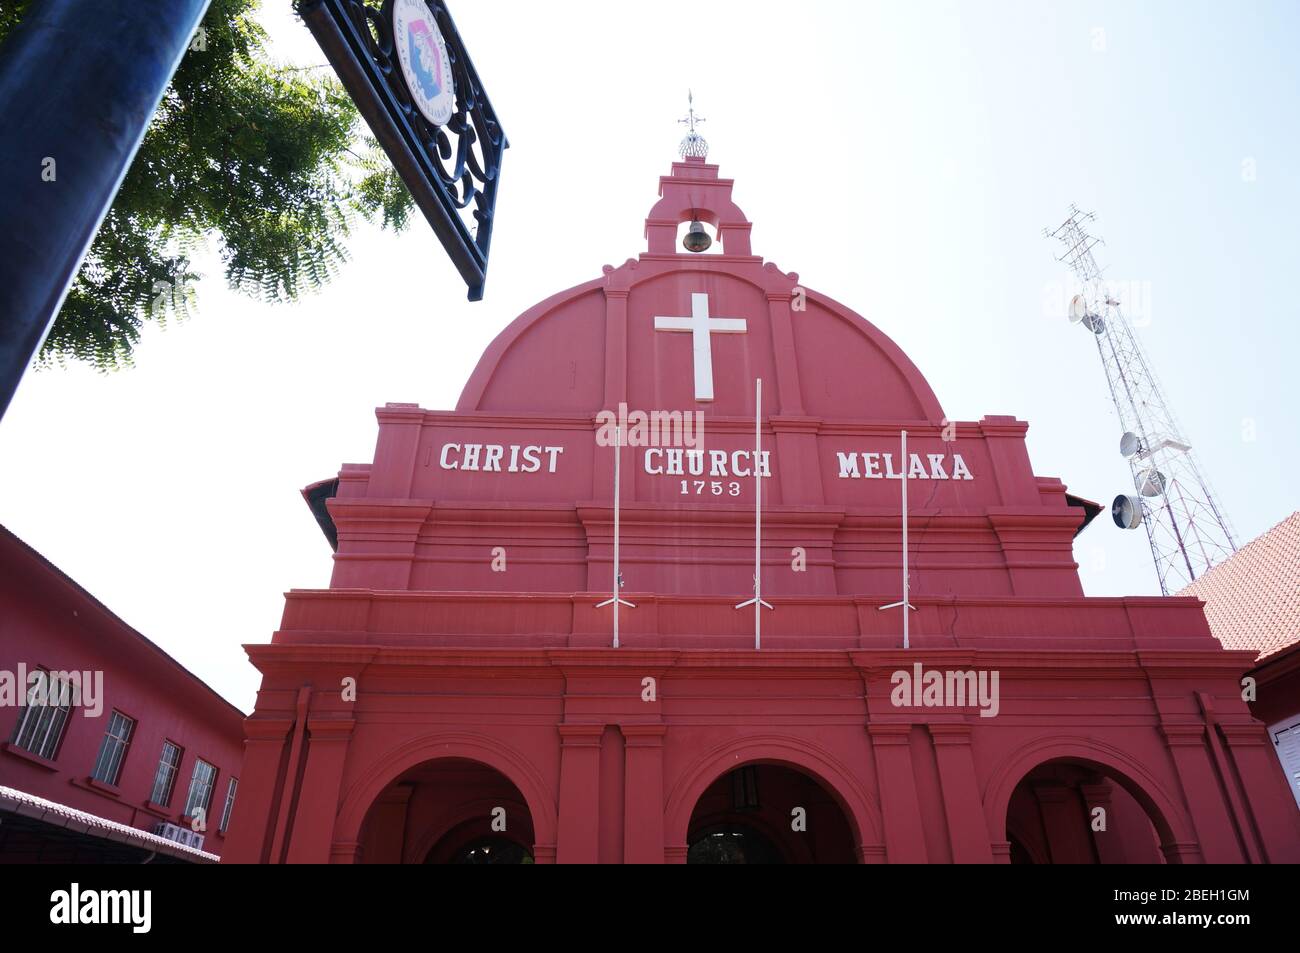 Christ Church ist eine anglikanische Kirche aus dem 18. Jahrhundert in der Stadt Malacca, Malaysia. Es ist die älteste funktionierende protestantische Kirche in Malaysia und ist mit Stockfoto